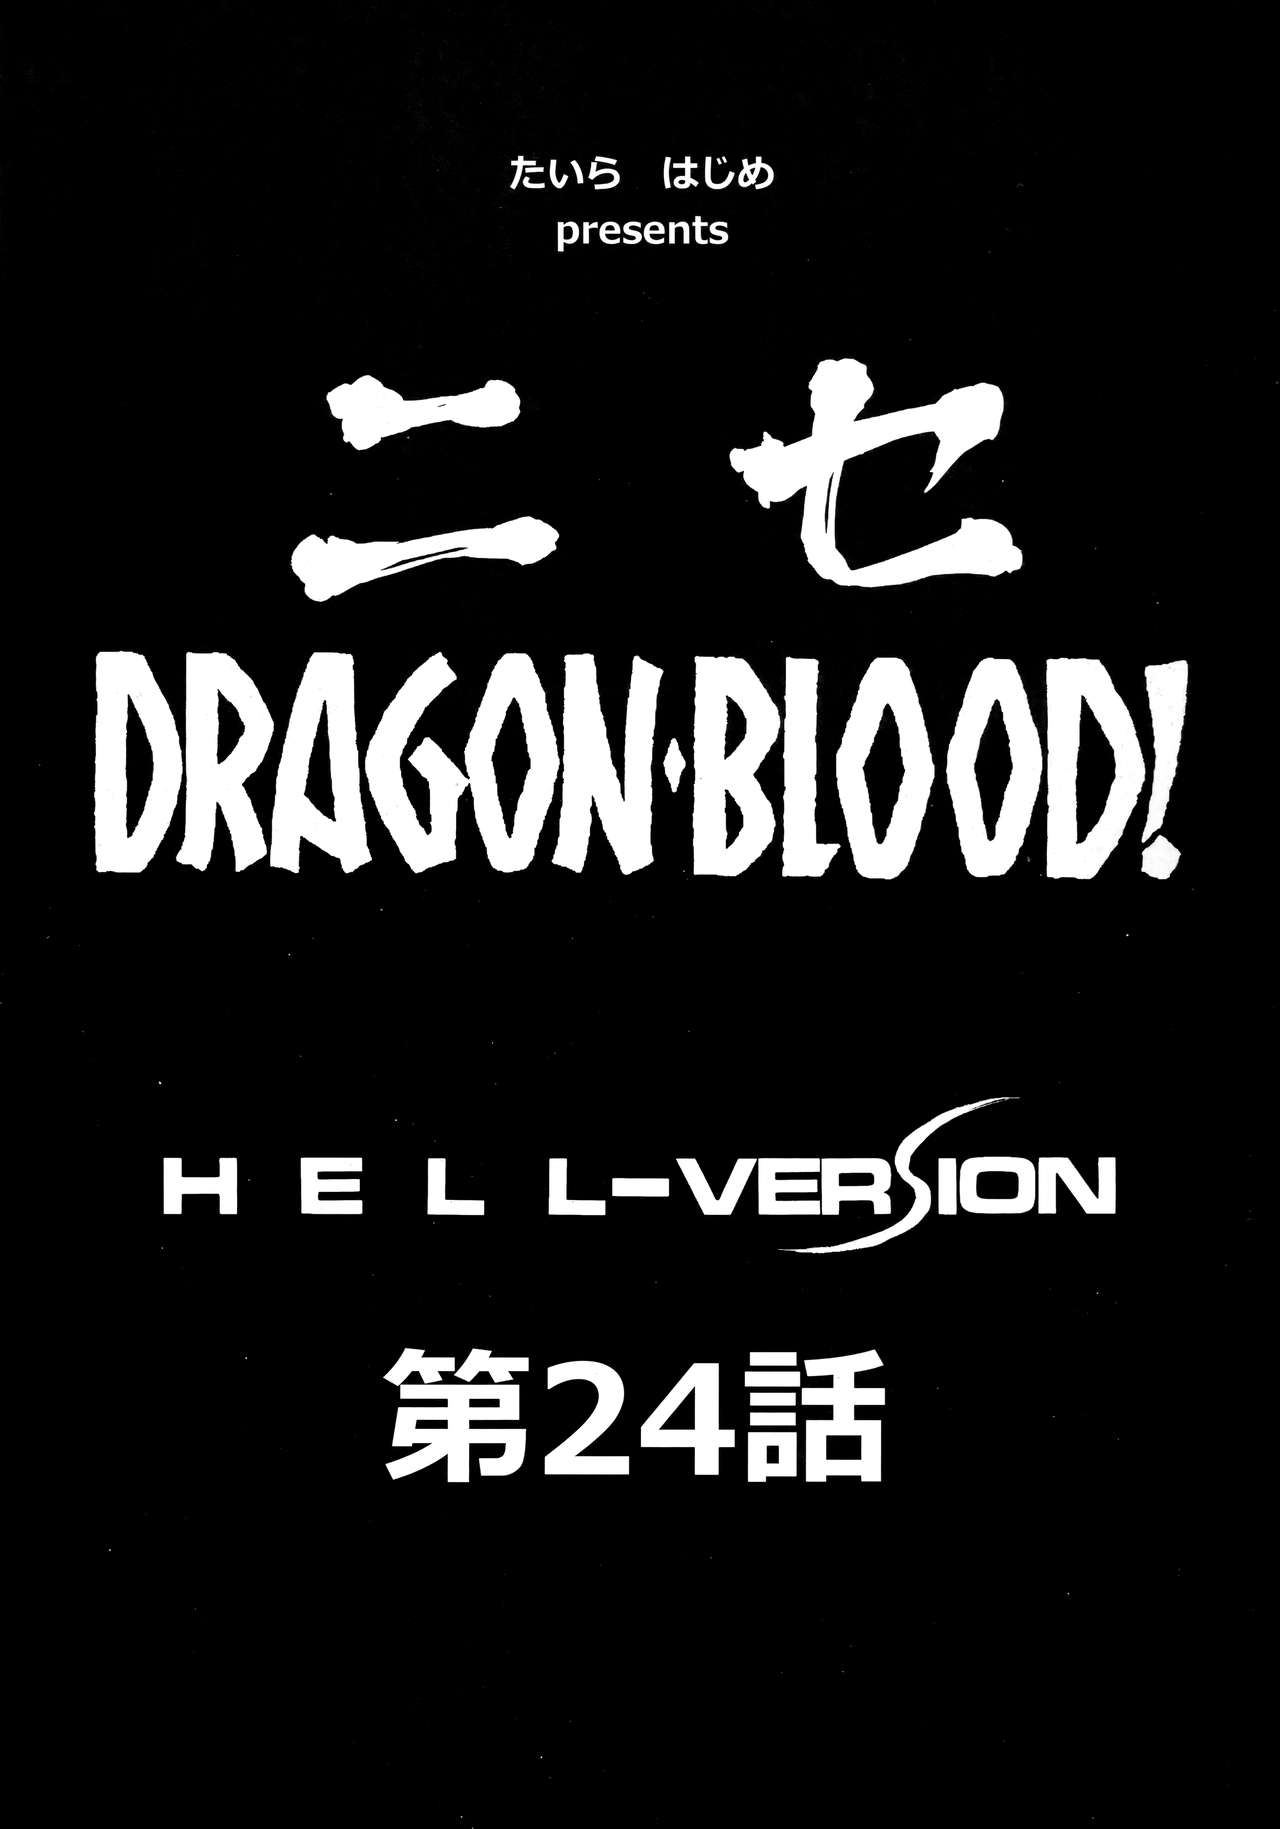 (C96) [LTM. (たいらはじめ)] ニセDRAGON・BLOOD! 24.